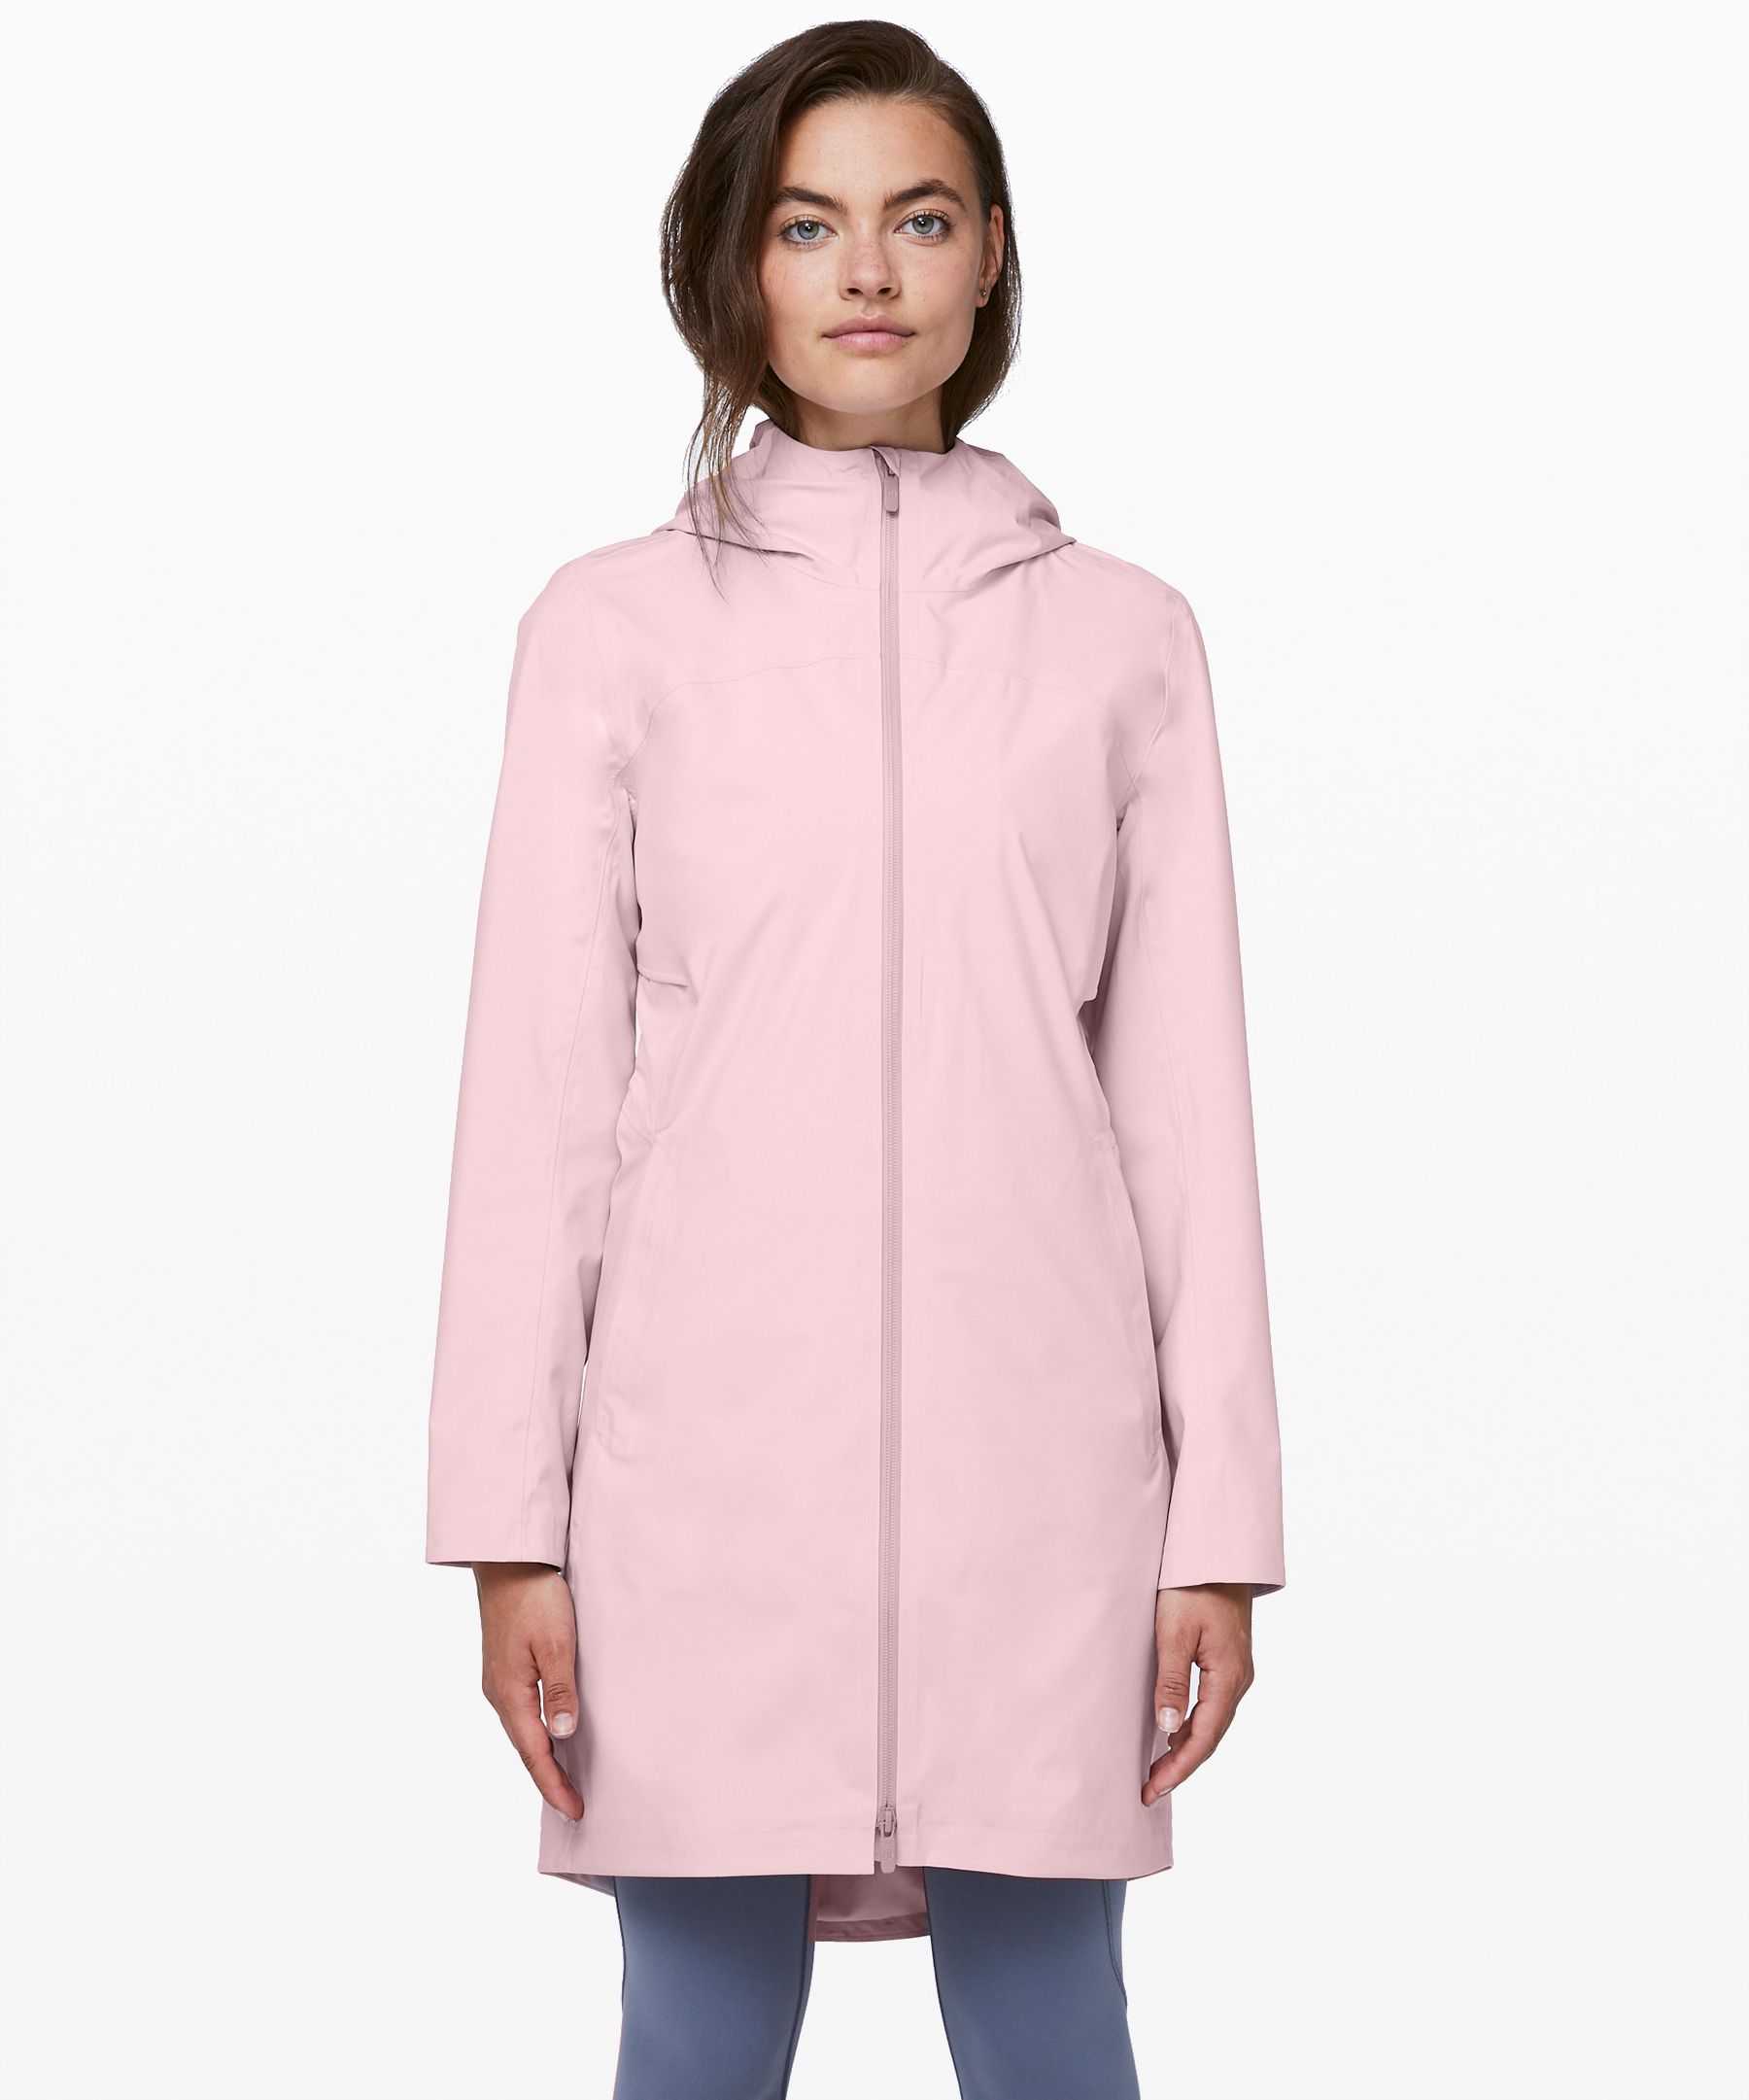 lululemon women's rain jacket